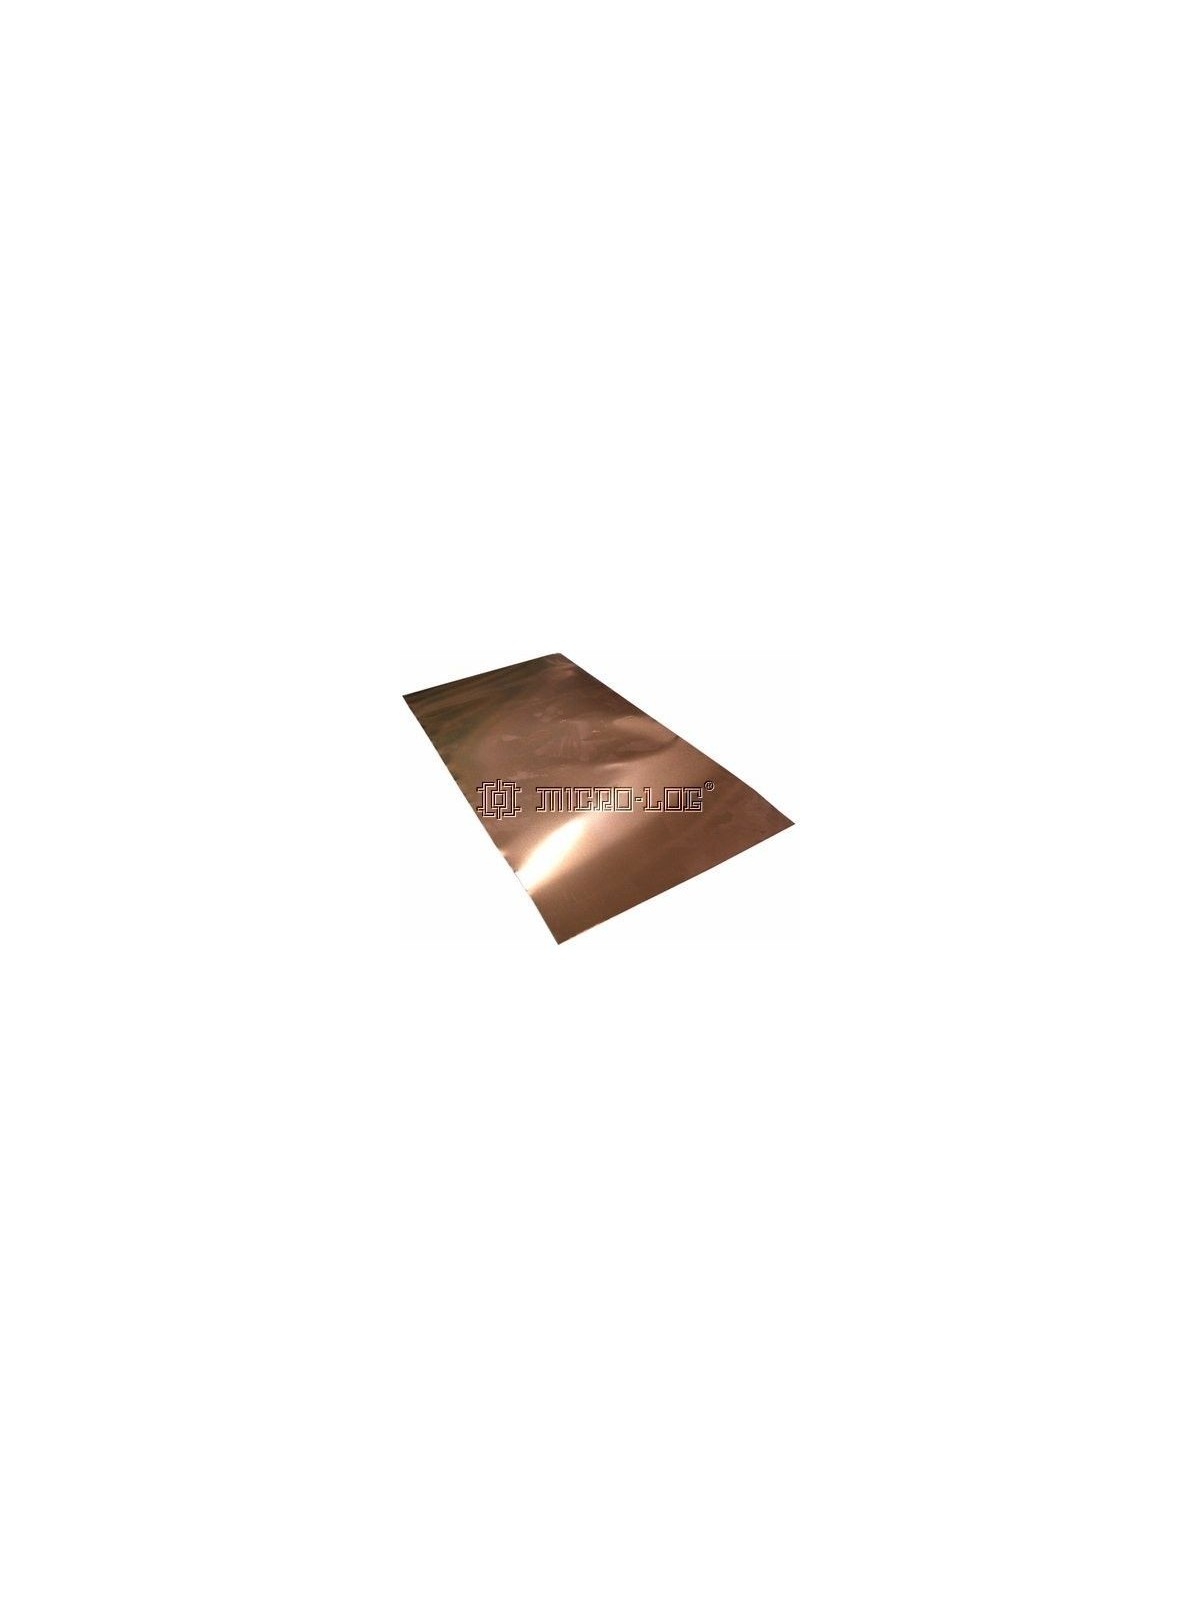 Lámina de cobre (24 x 12 cm.)